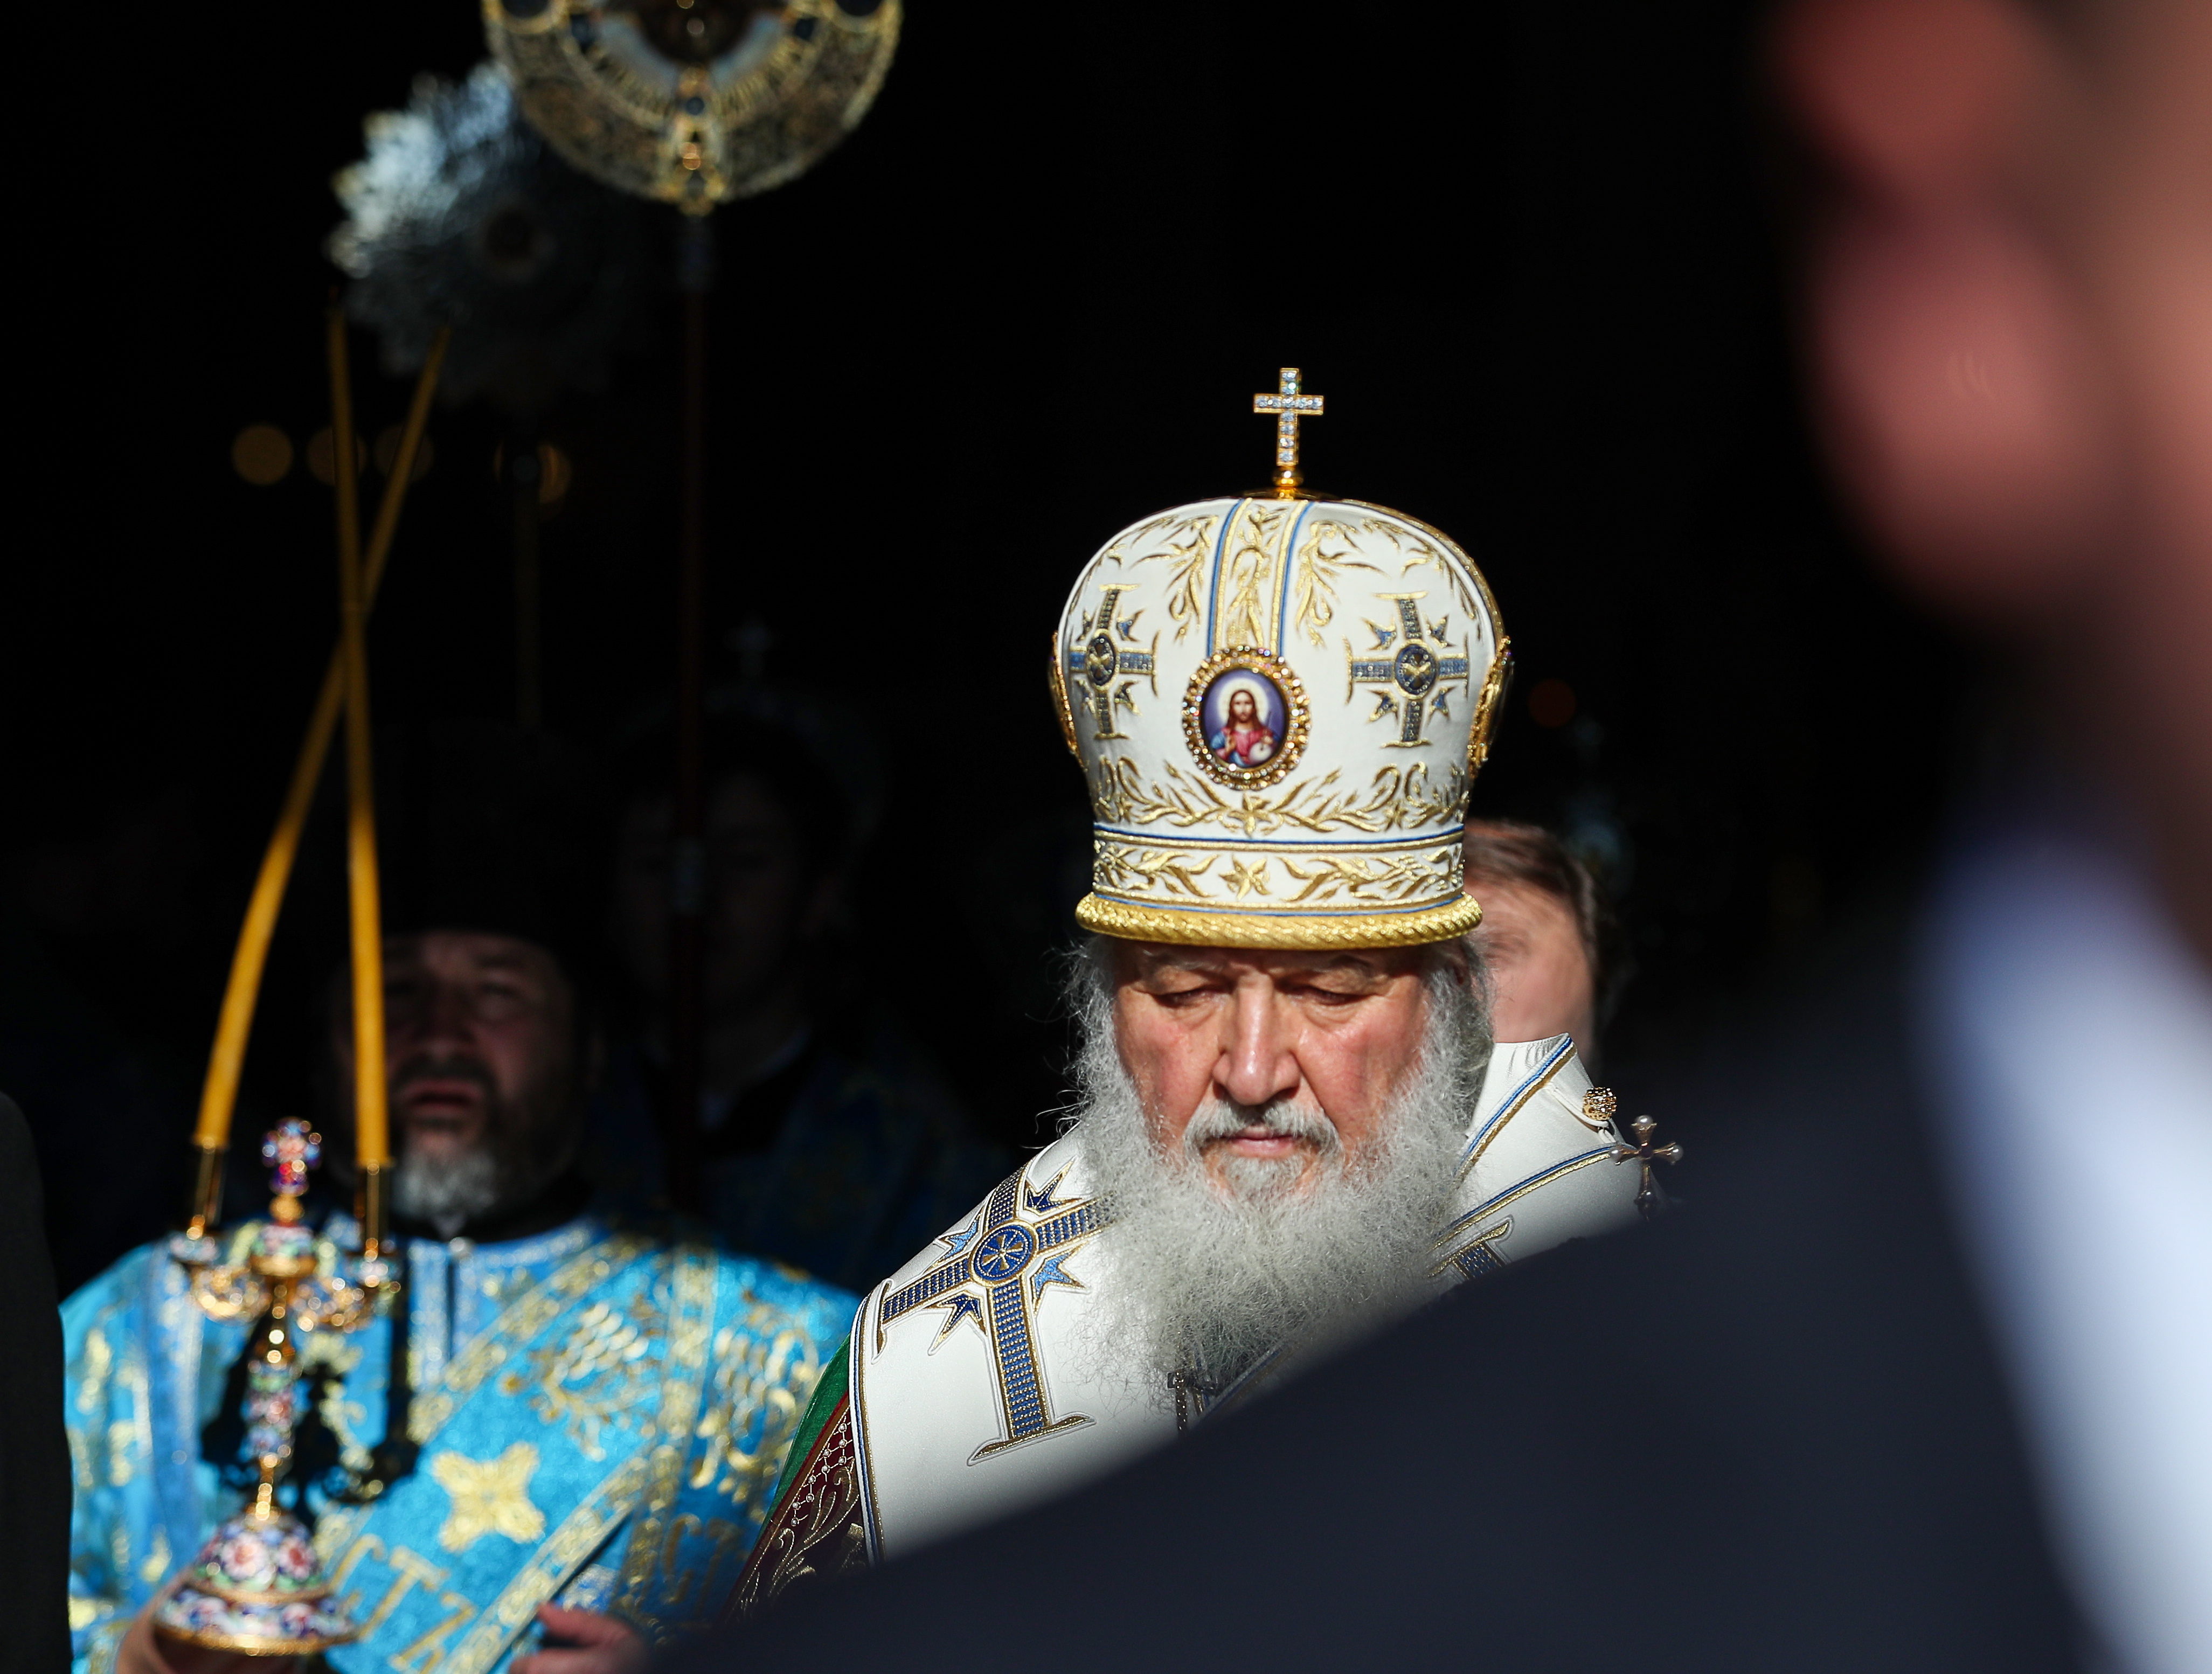 Inter-Orthodox feud deepens over Ukraine